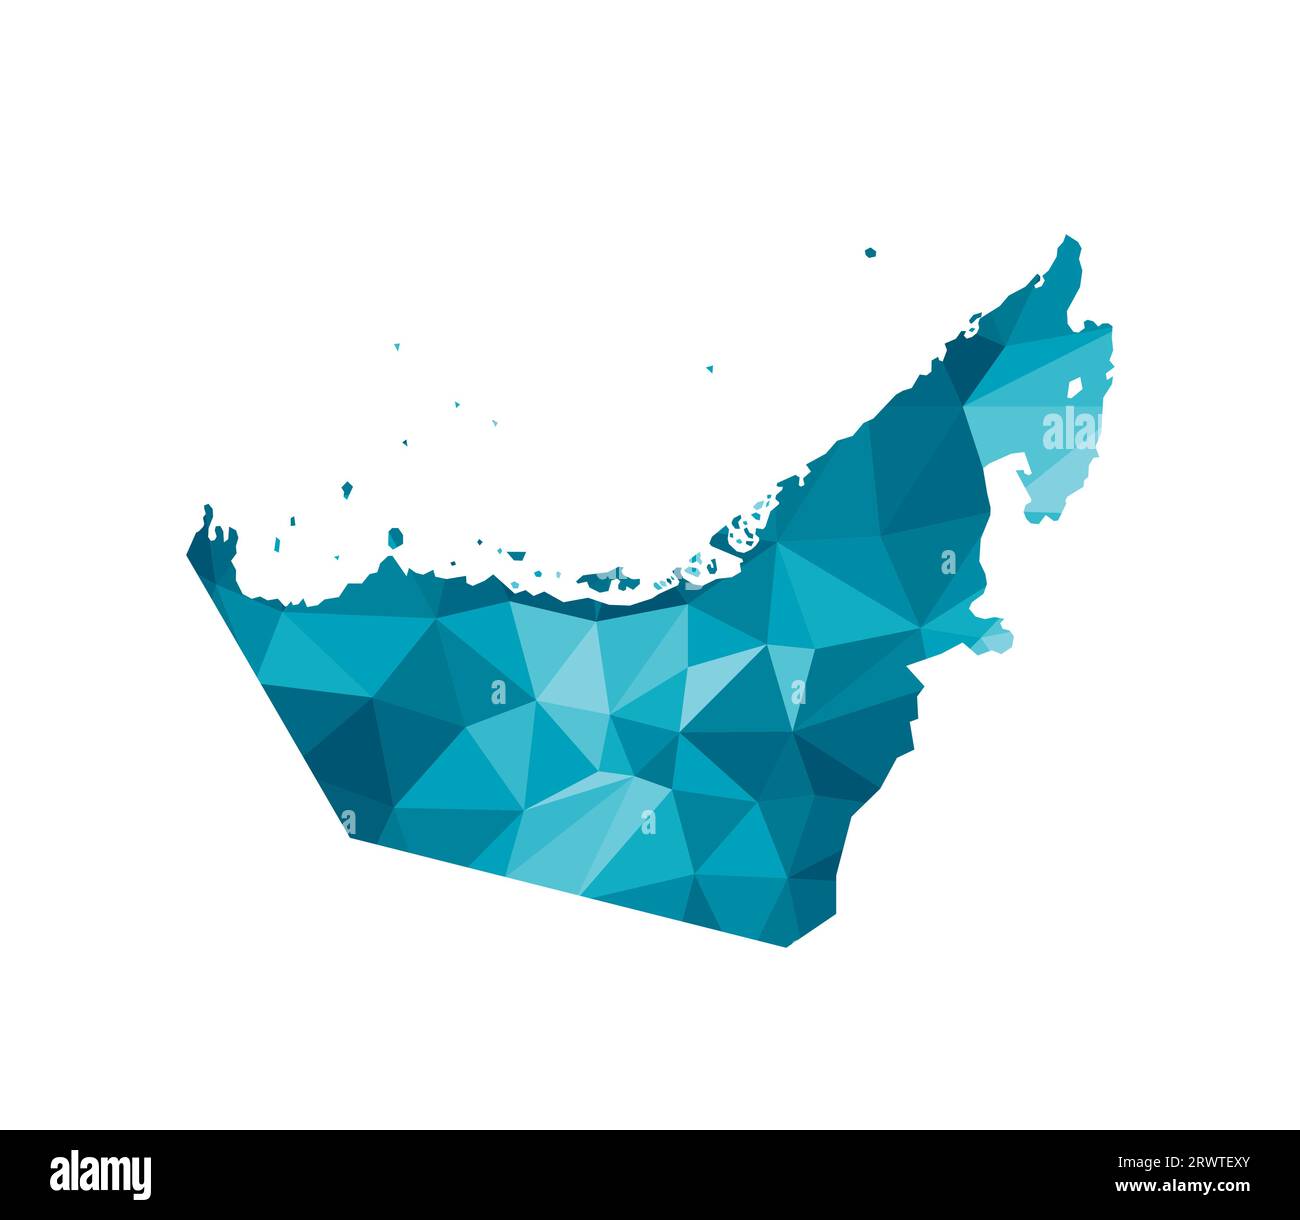 Vektor-isoliertes Illustrationssymbol mit vereinfachter blauer Silhouette der VAE (Vereinigte Arabische Emirate) Karte. Polygonaler geometrischer Stil, dreieckige Formen. Whi Stock Vektor